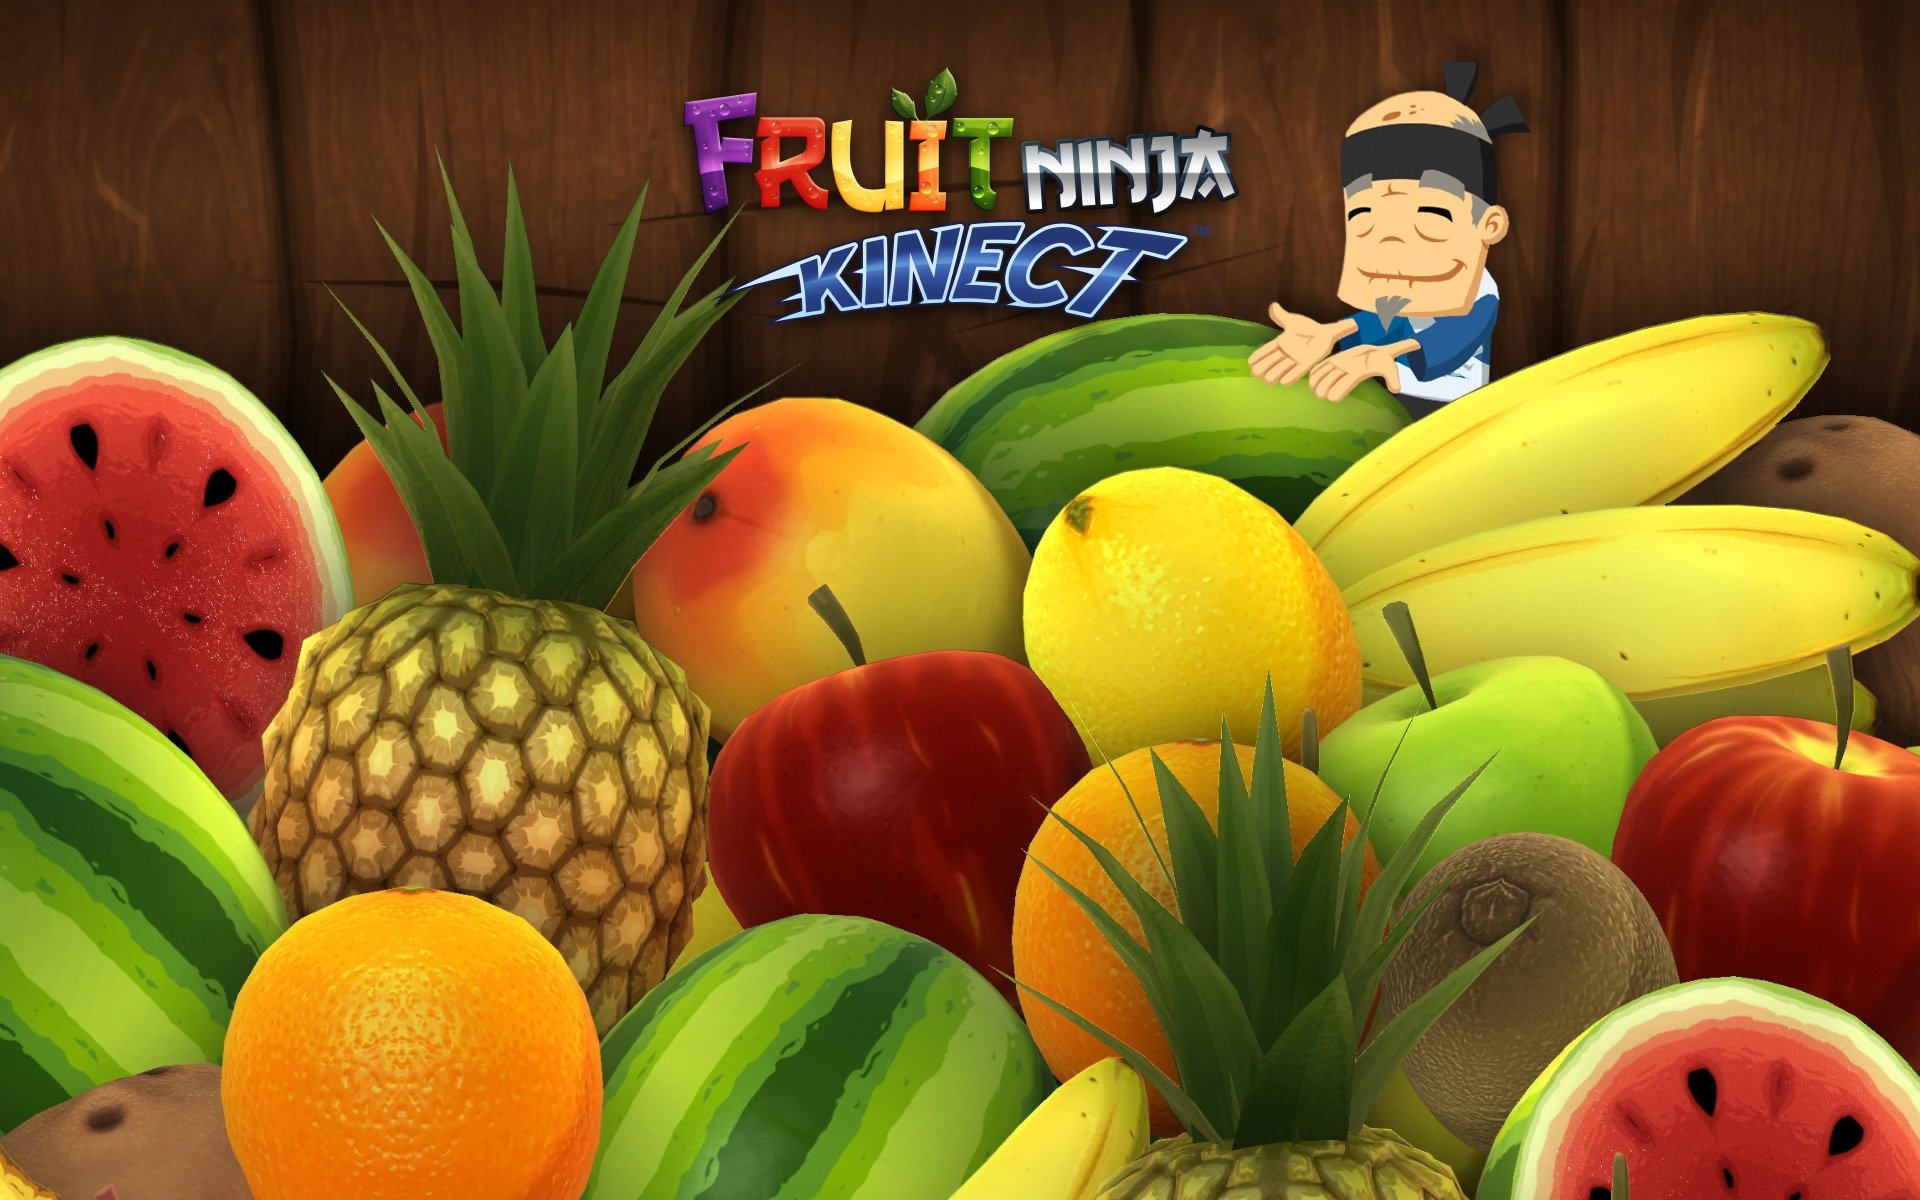 High Resolution Wallpaper | Fruit Ninja Kinect 1920x1200 px